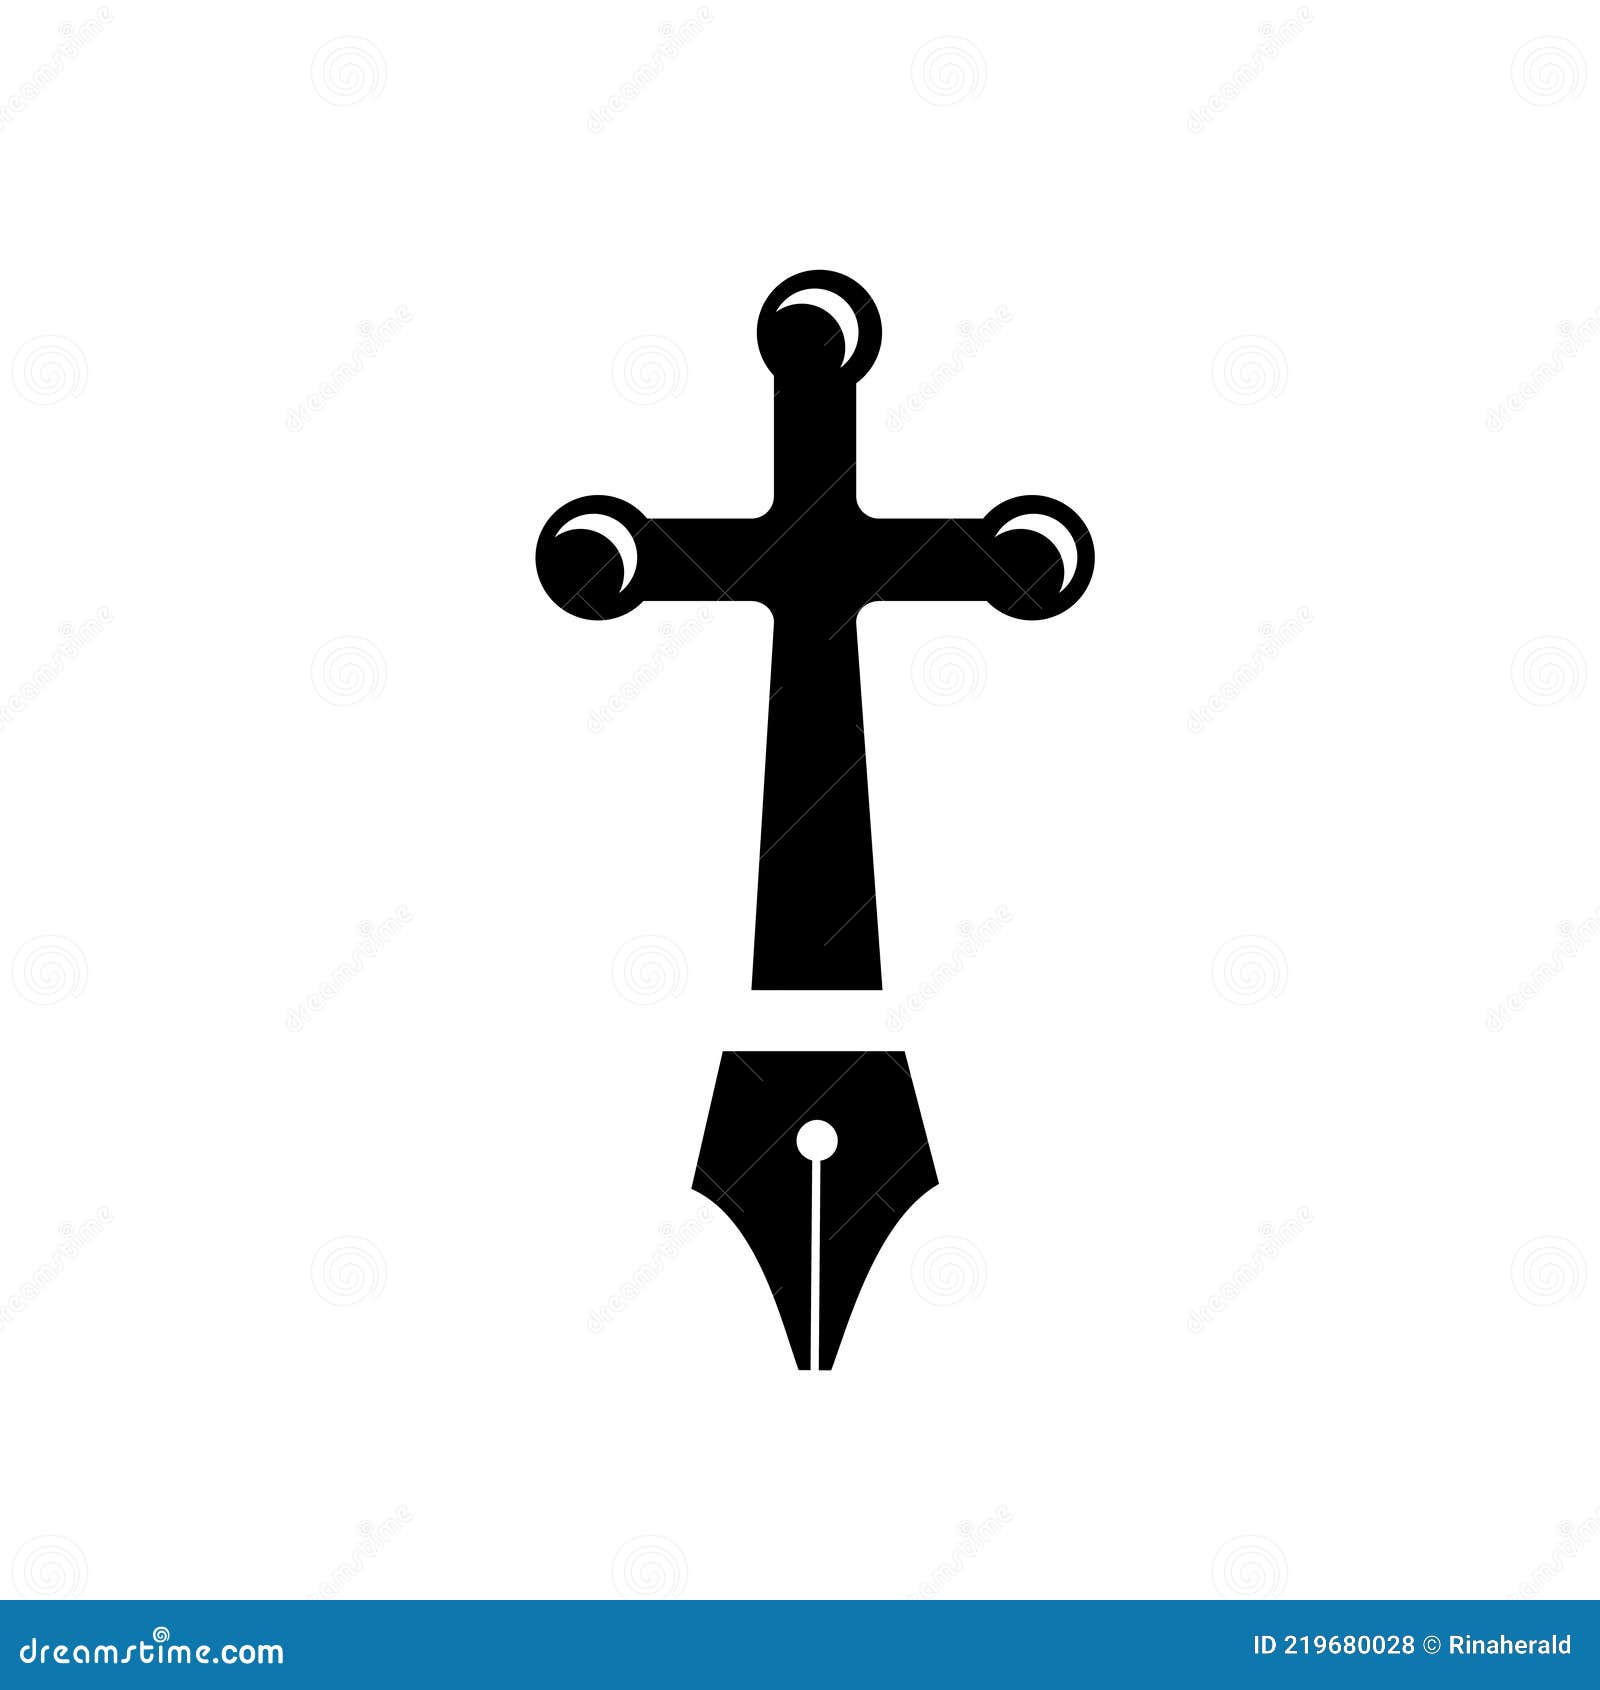 Vintage Cross Pen Since 1846 Made in USA - Logo Lions Head | eBay